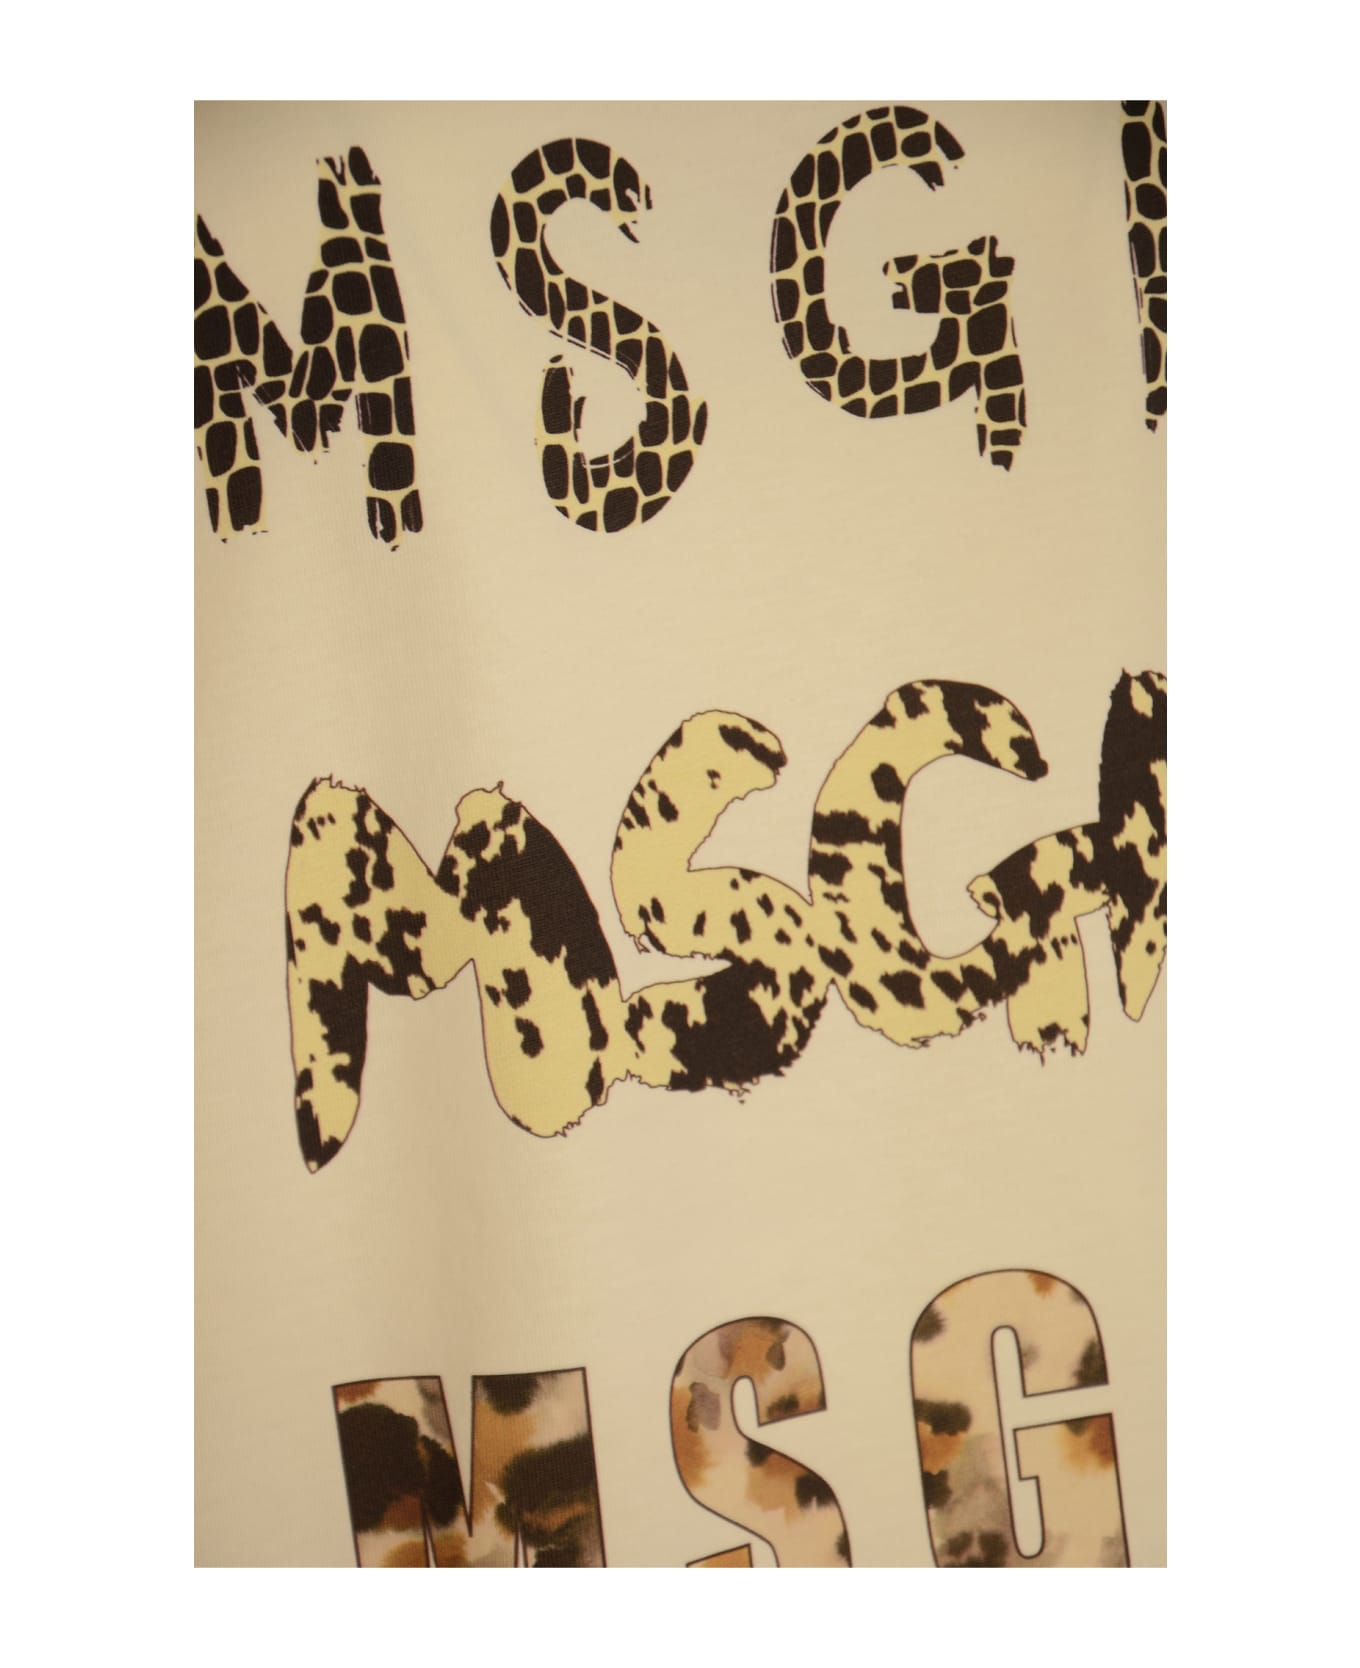 MSGM Round Neck T-shirt - Beige Tシャツ